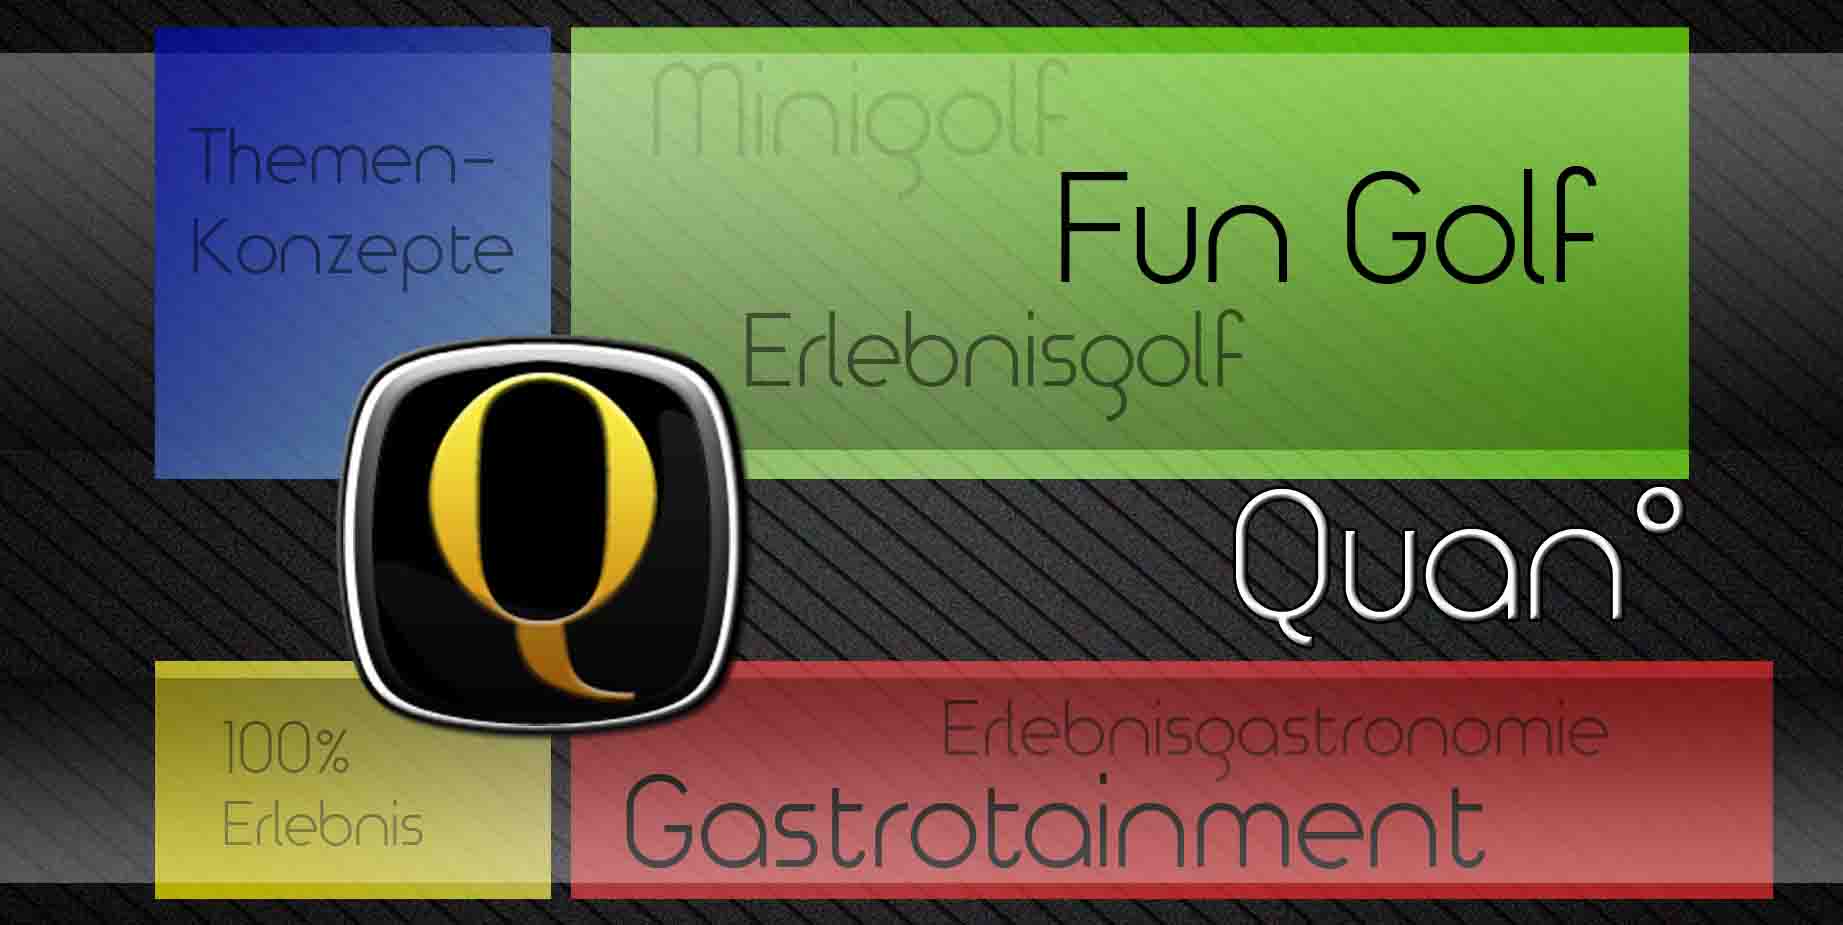 Quan - Erlebnis Fun Minigolf, Erlebnisgastronomie, Conceptioneering, Thematisierungen, Sponsoring, Marketing, Merchandise